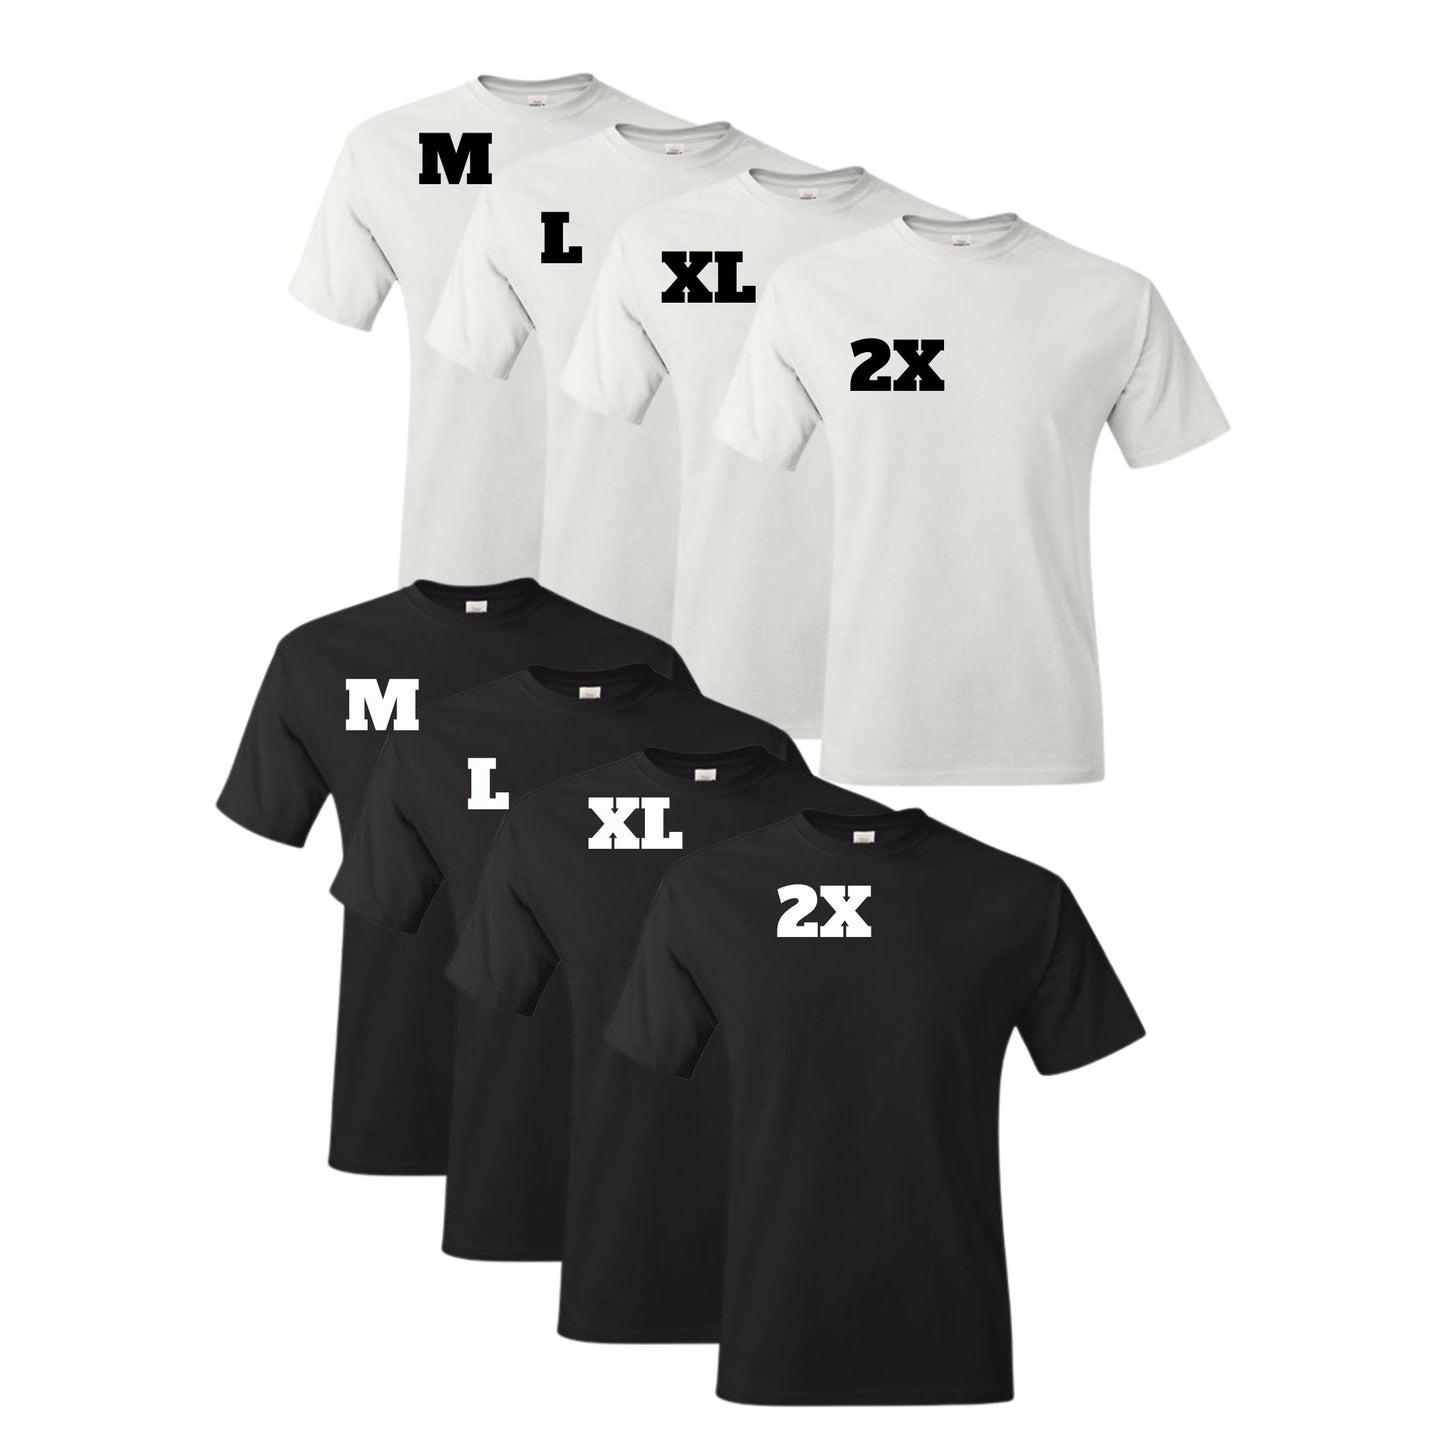 COTTON T-Shirt BUNDLES (Unisex Adult)